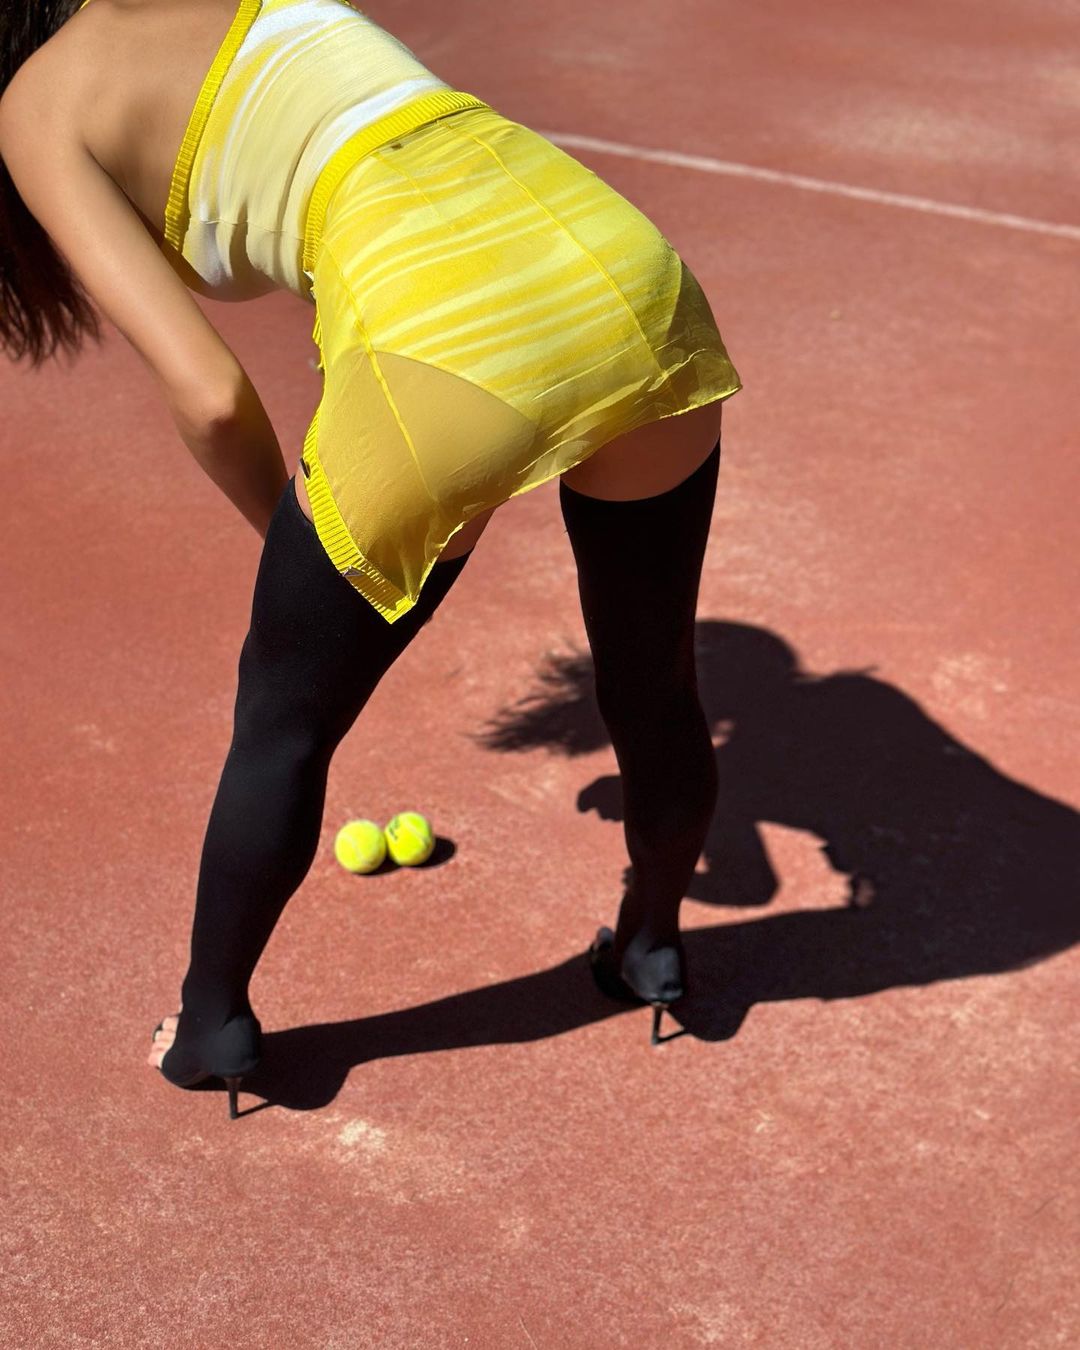 Tom Brady’s Girl Irina Shayk Hits the Tennis Court in Heels! - Photo 2